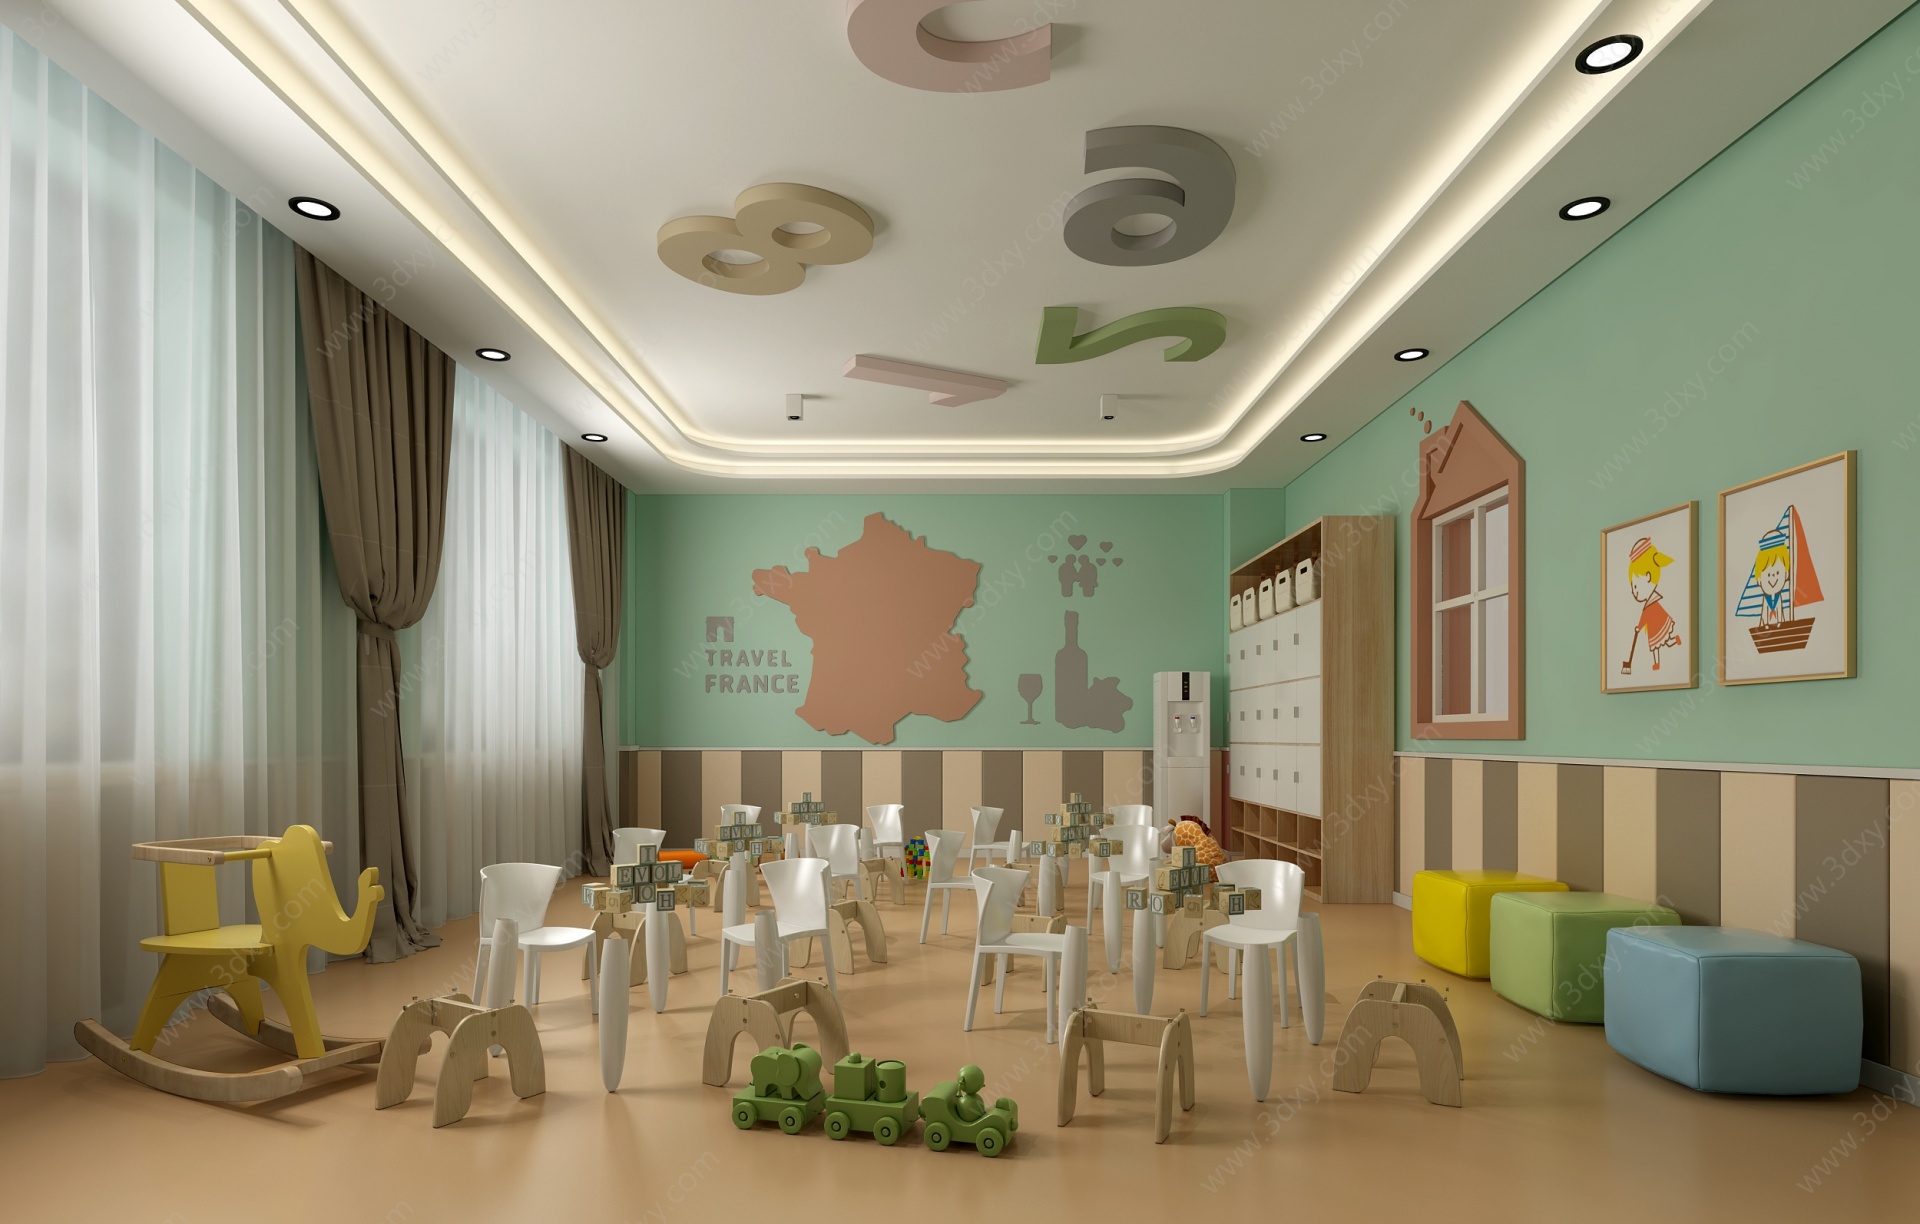 现代幼儿园教室3D模型